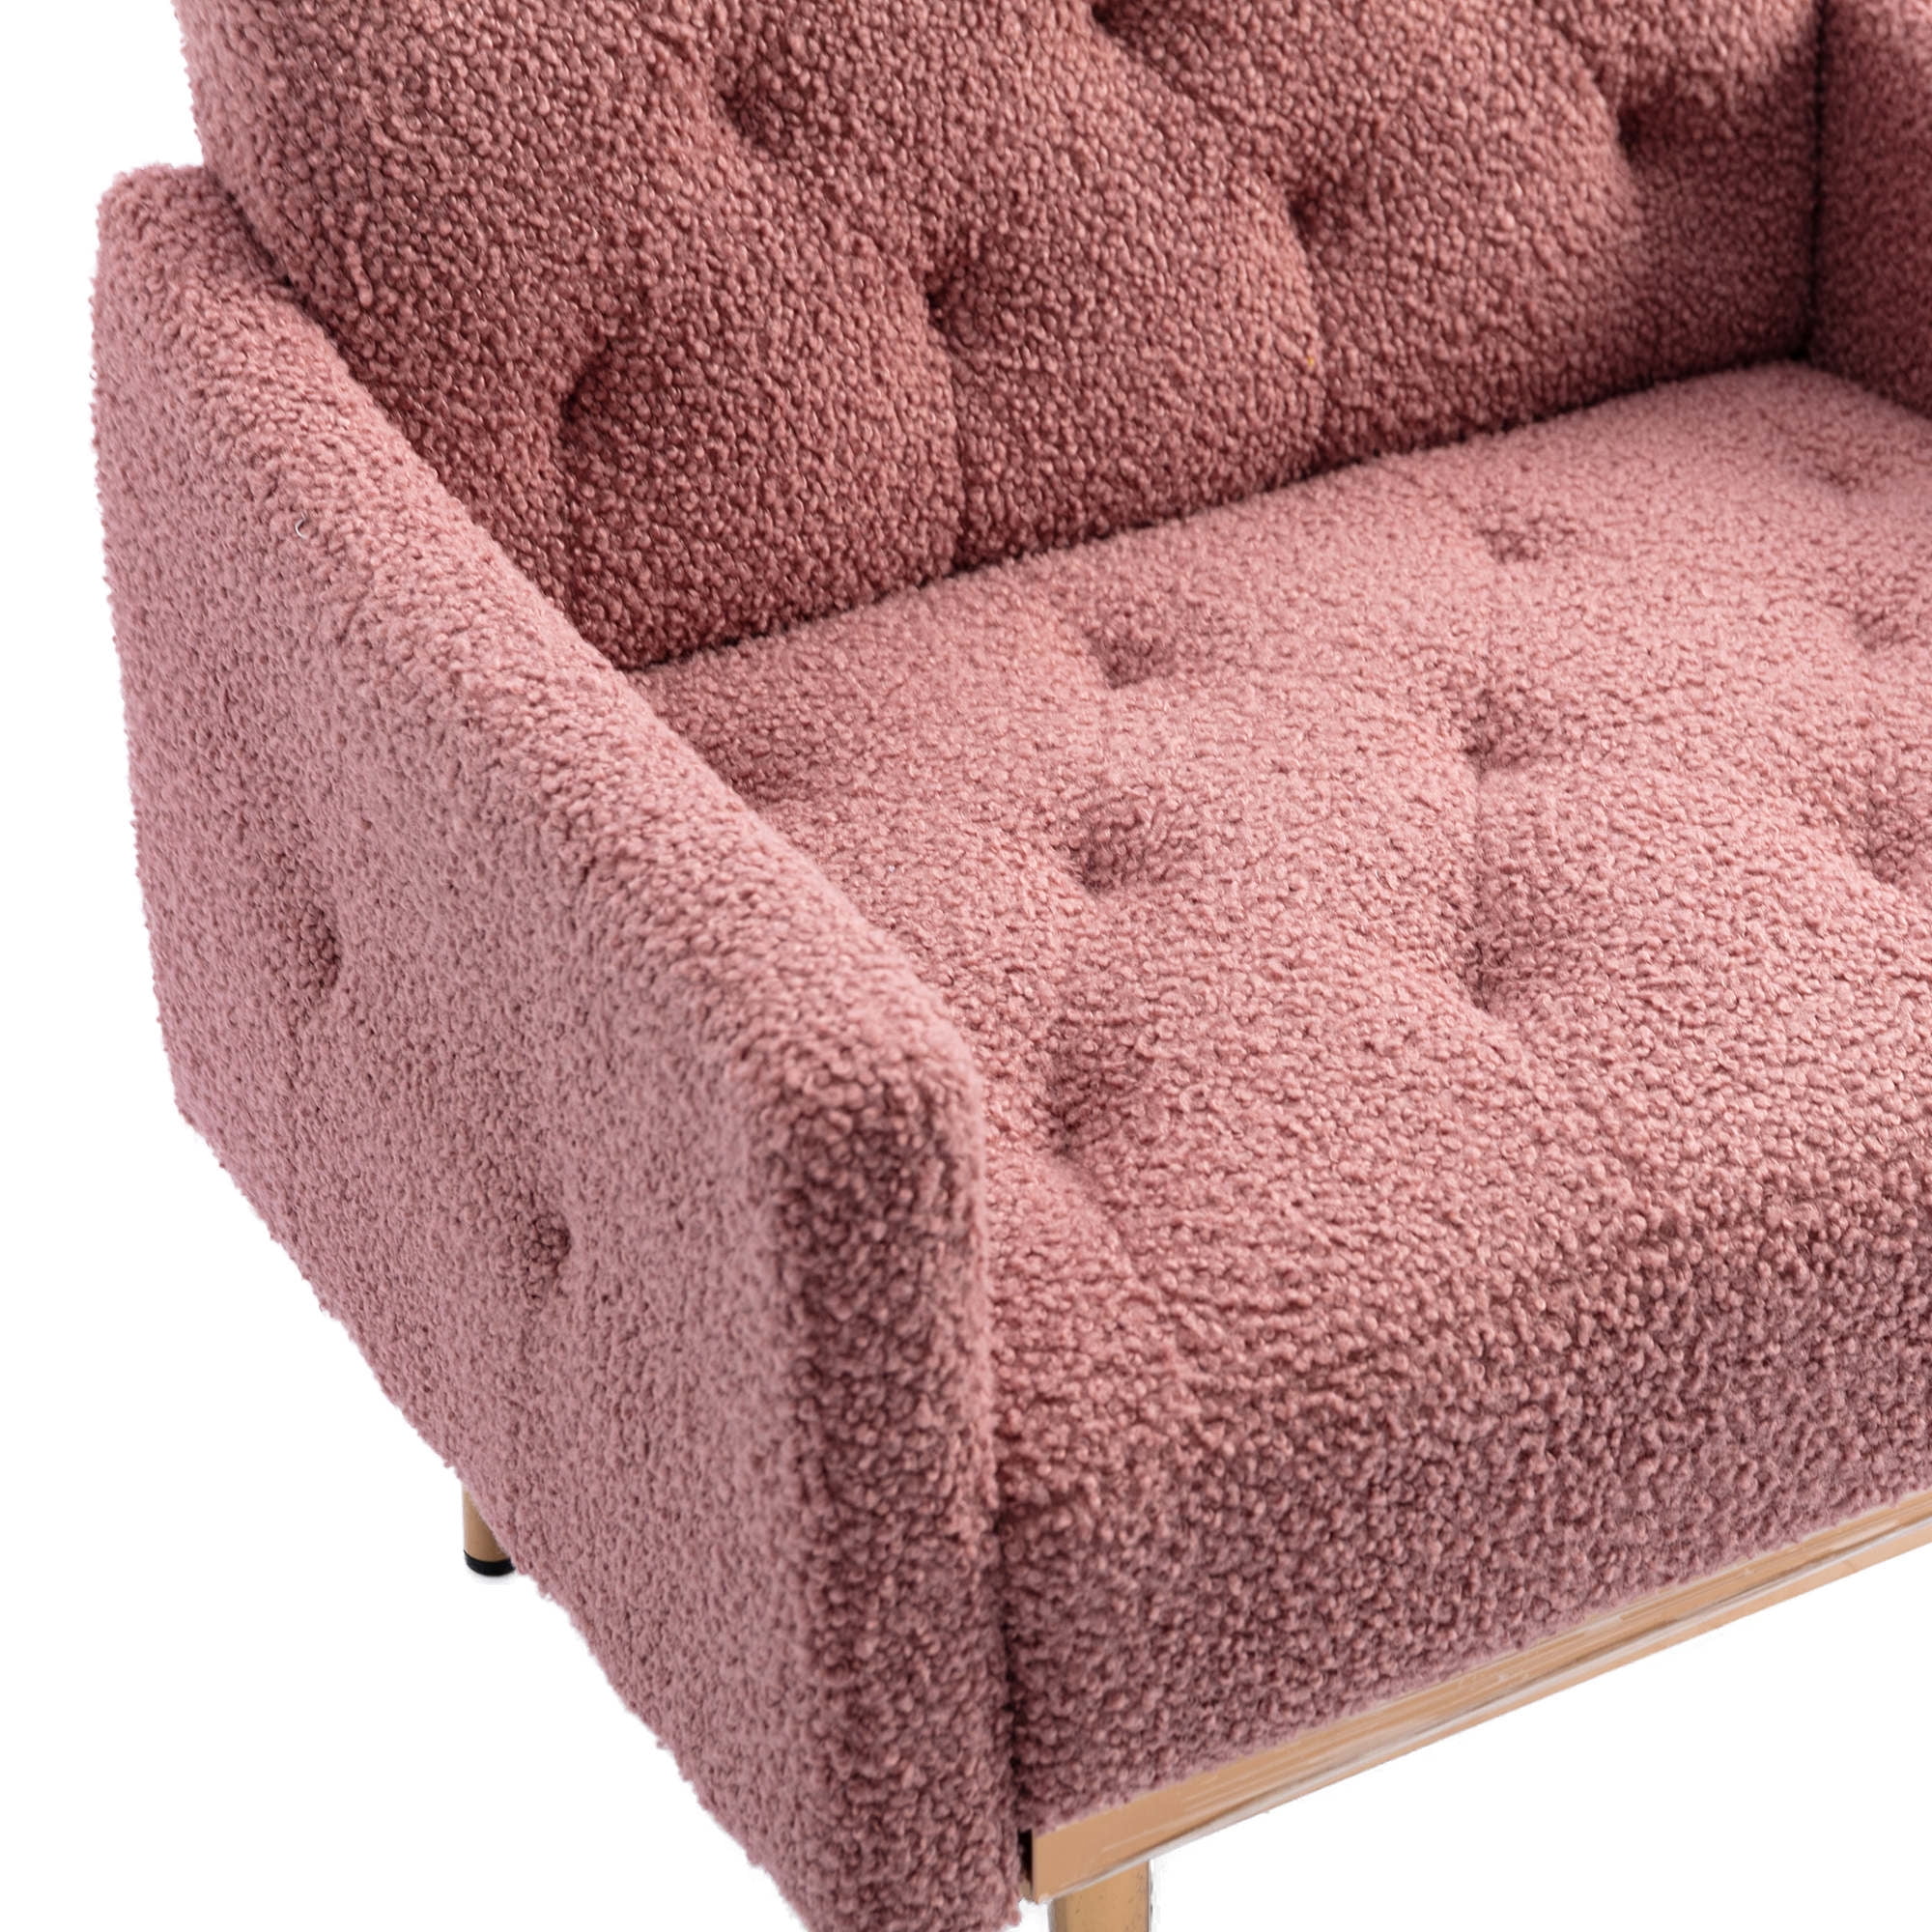 Modern Velvet Single Sofa Chair